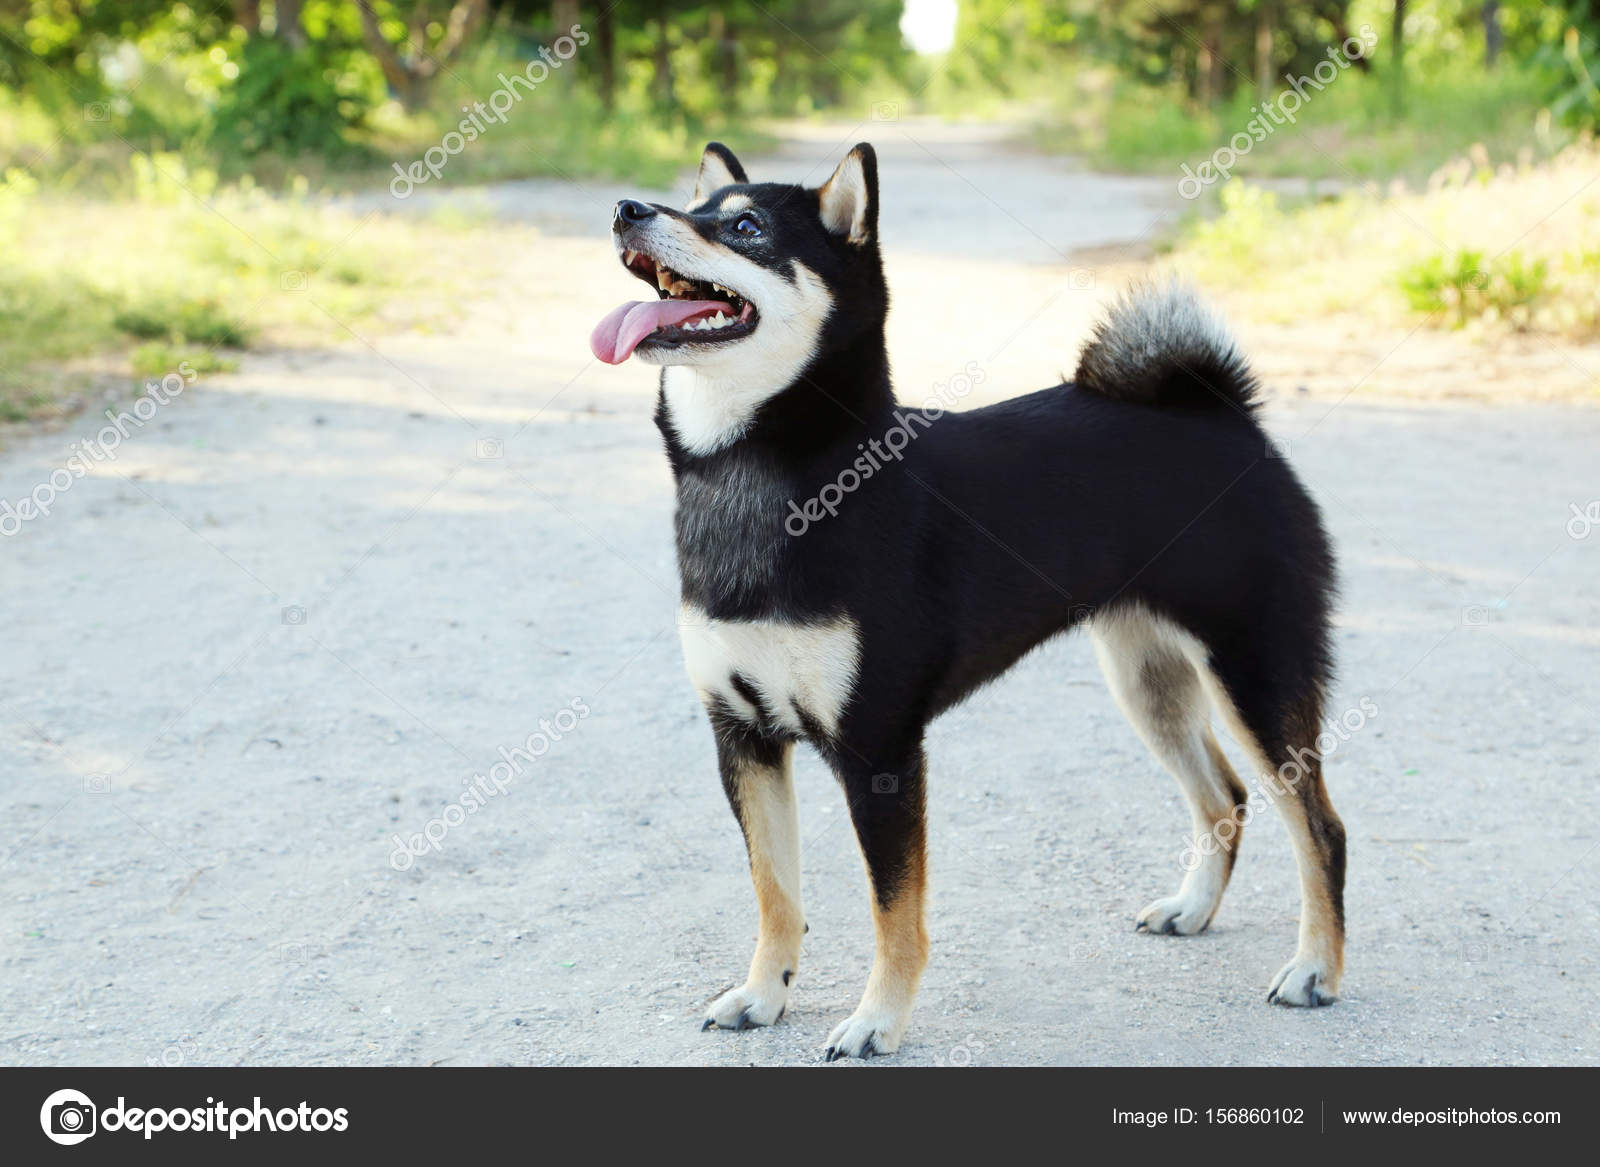 Schwarzer shiba inu Hund - Stockfotografie: lizenzfreie Fotos © 5seconds  156860102 | Depositphotos